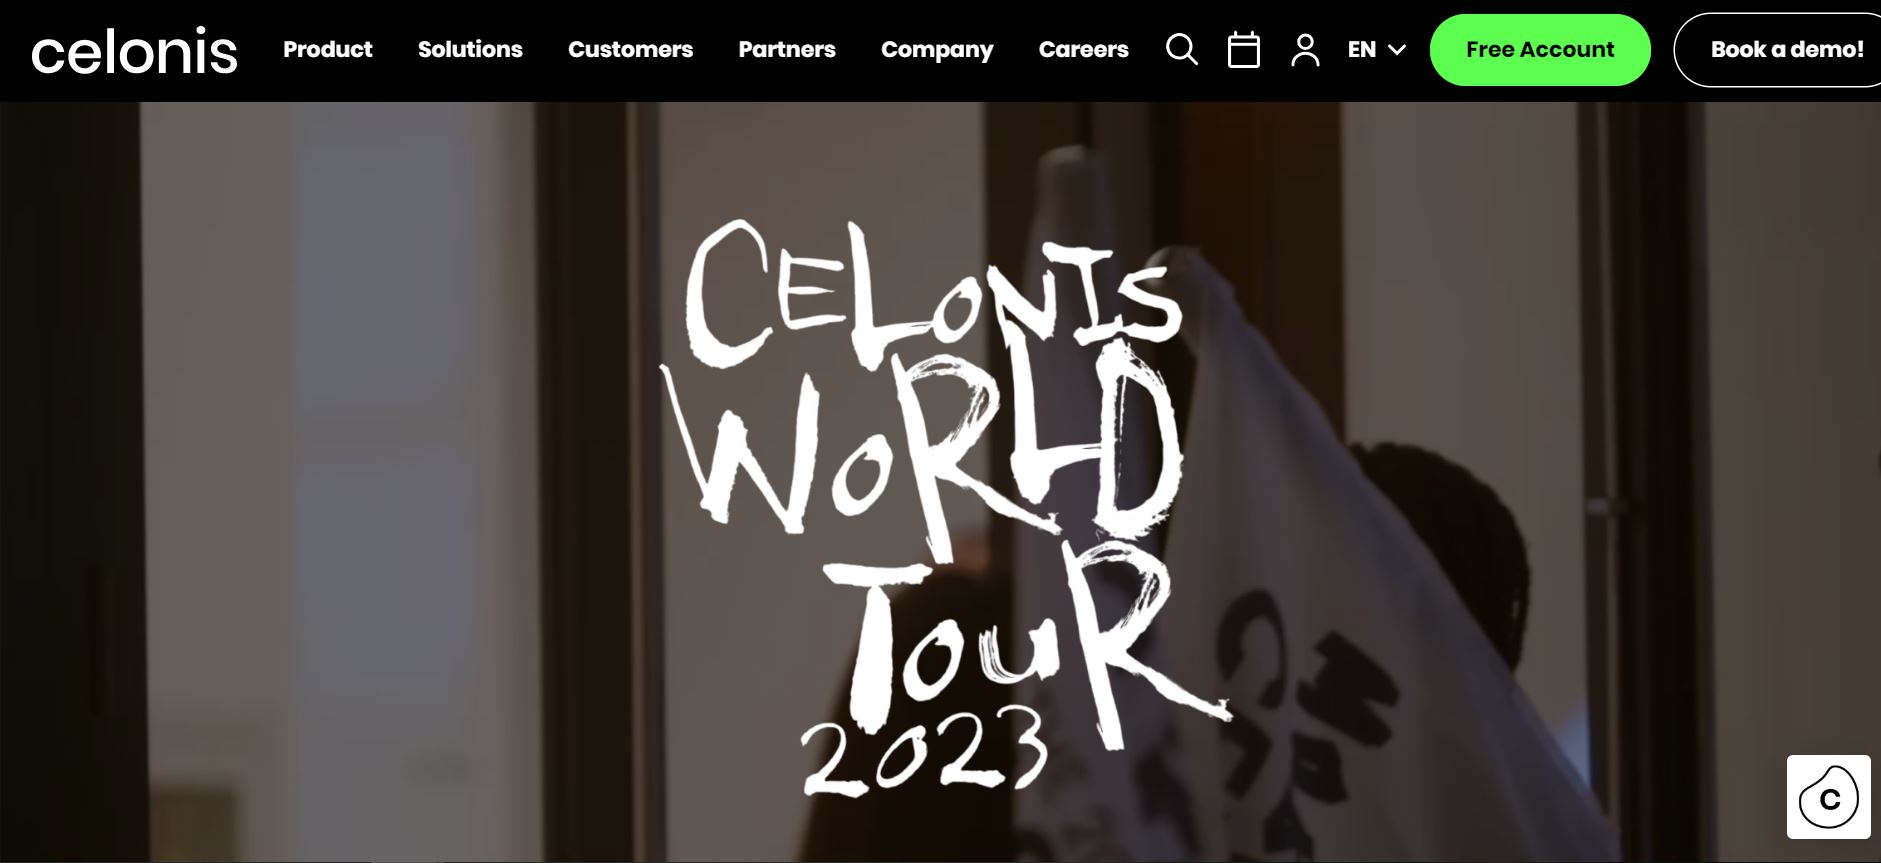 Celonis’s website